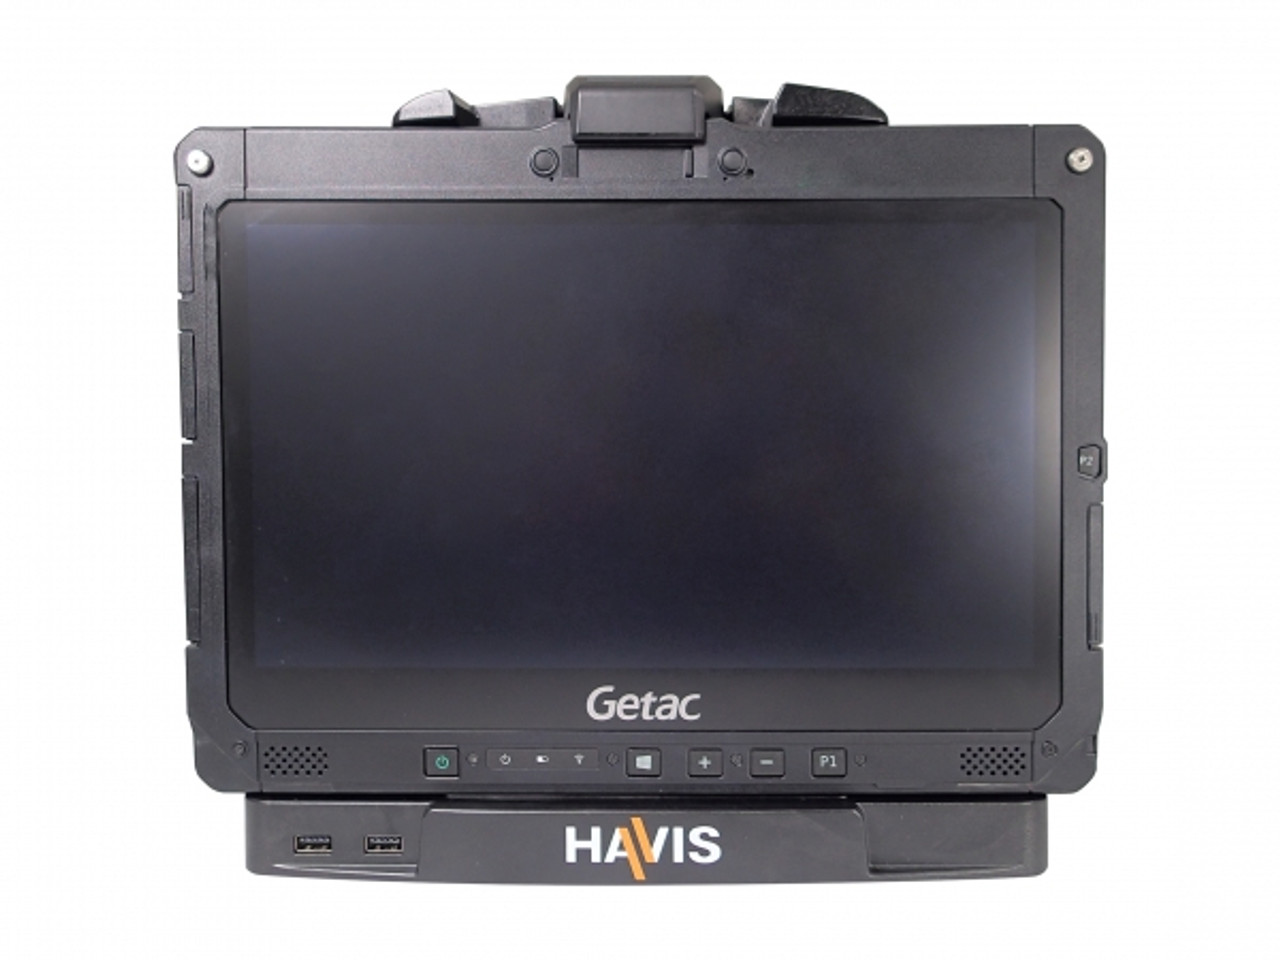 Havis DS-GTC-903 Cradle for Getac K120 Tablet